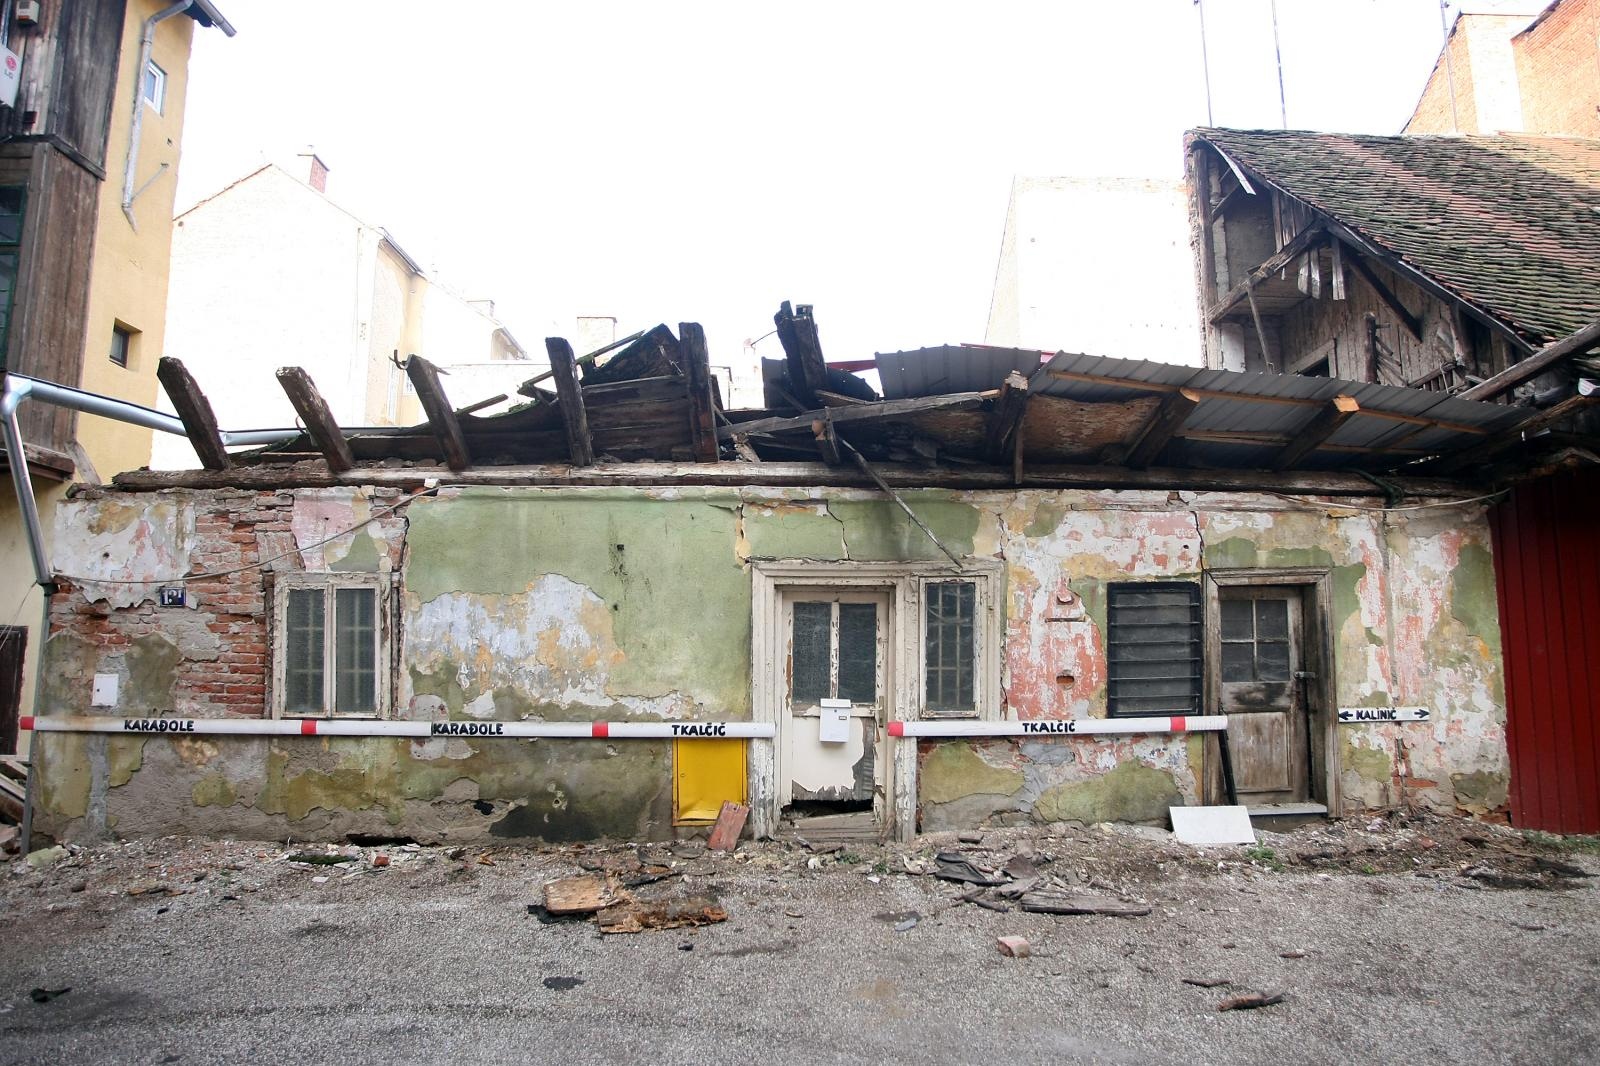 Gradonačelnik tvrdi kako je gospođa Vesna stan kupila novcem od prodaje vlastitog stana, u Preradovićevoj ulici u Zagrebu. Novcem od prodaje stana, kaže Bandić, zatvorili su i kredit za stan u Bužanovoj.